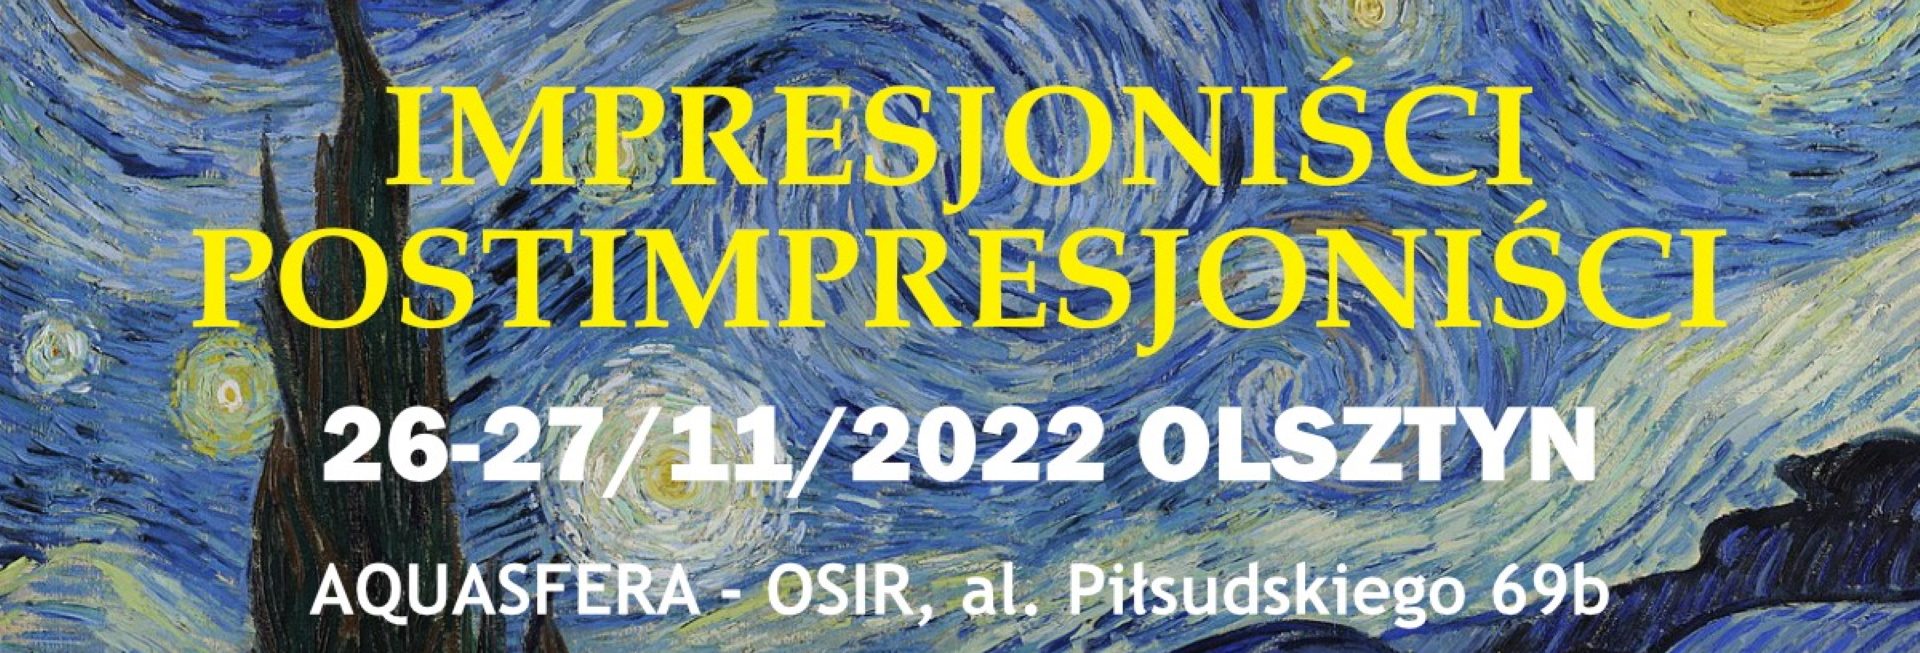 Plakat zapraszający do Olsztyna na Wystawę 3D "Impresjoniści i postimpresjoniści" Olsztyn 2022.